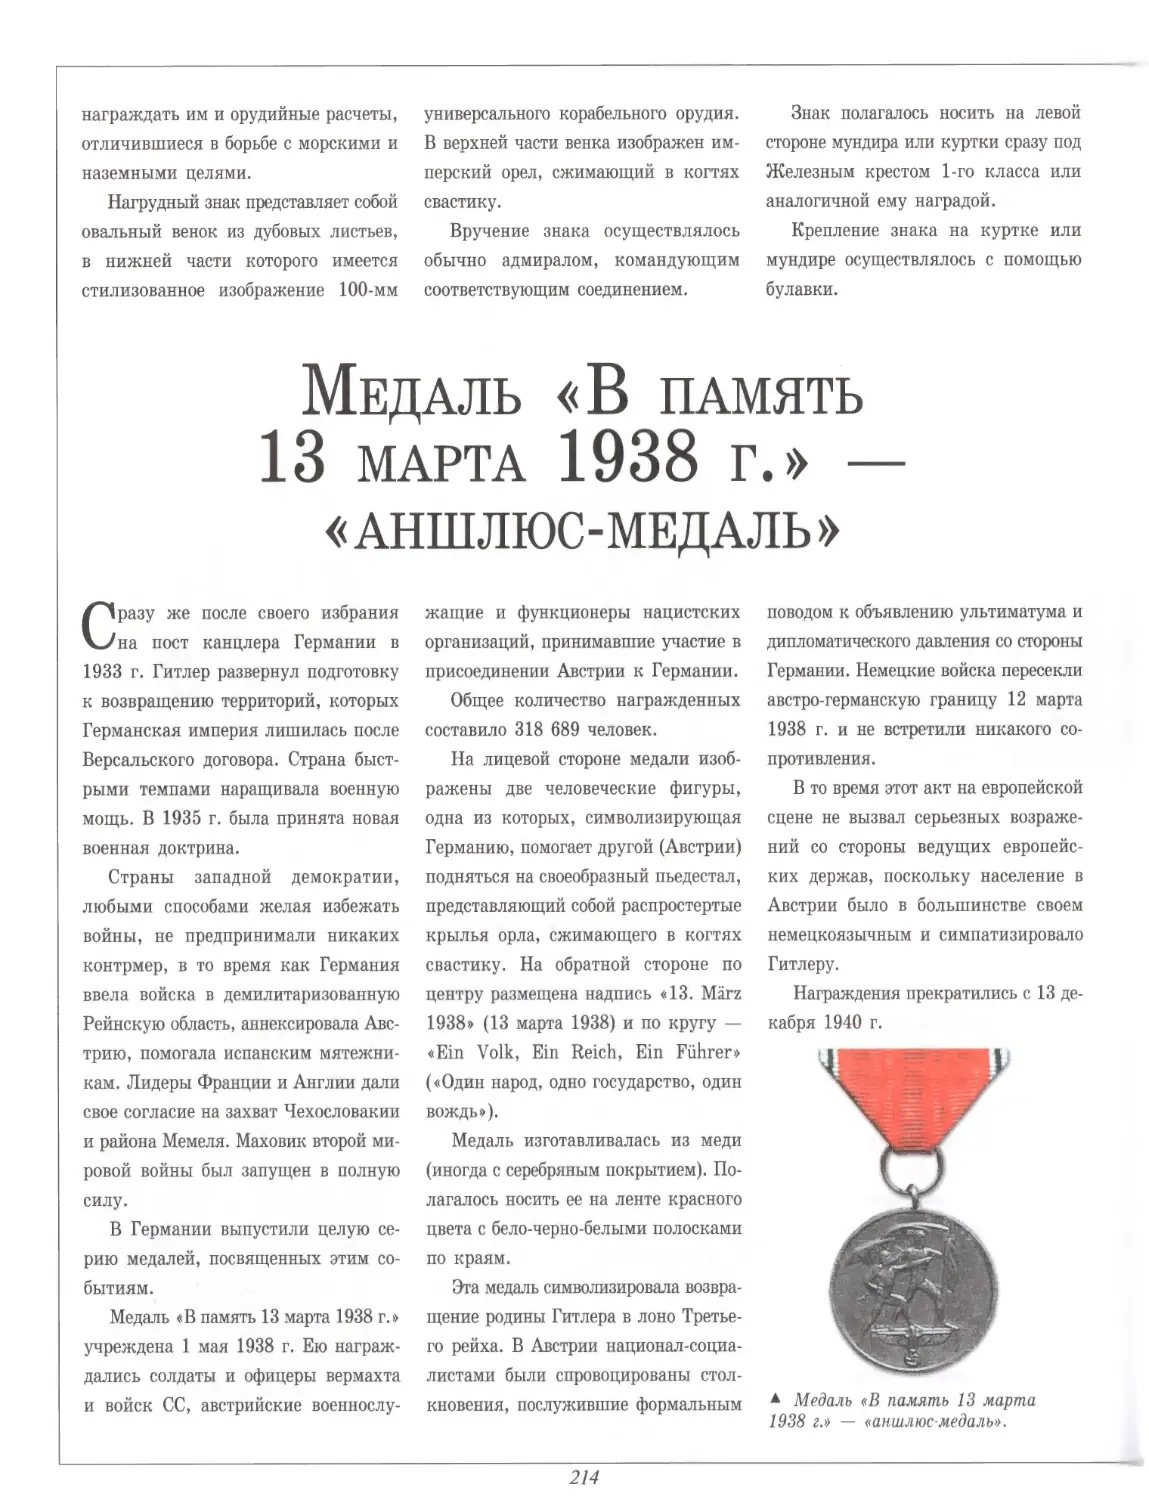 Медаль «В память 13 марта 1938 г.» — «аншлюс-медаль